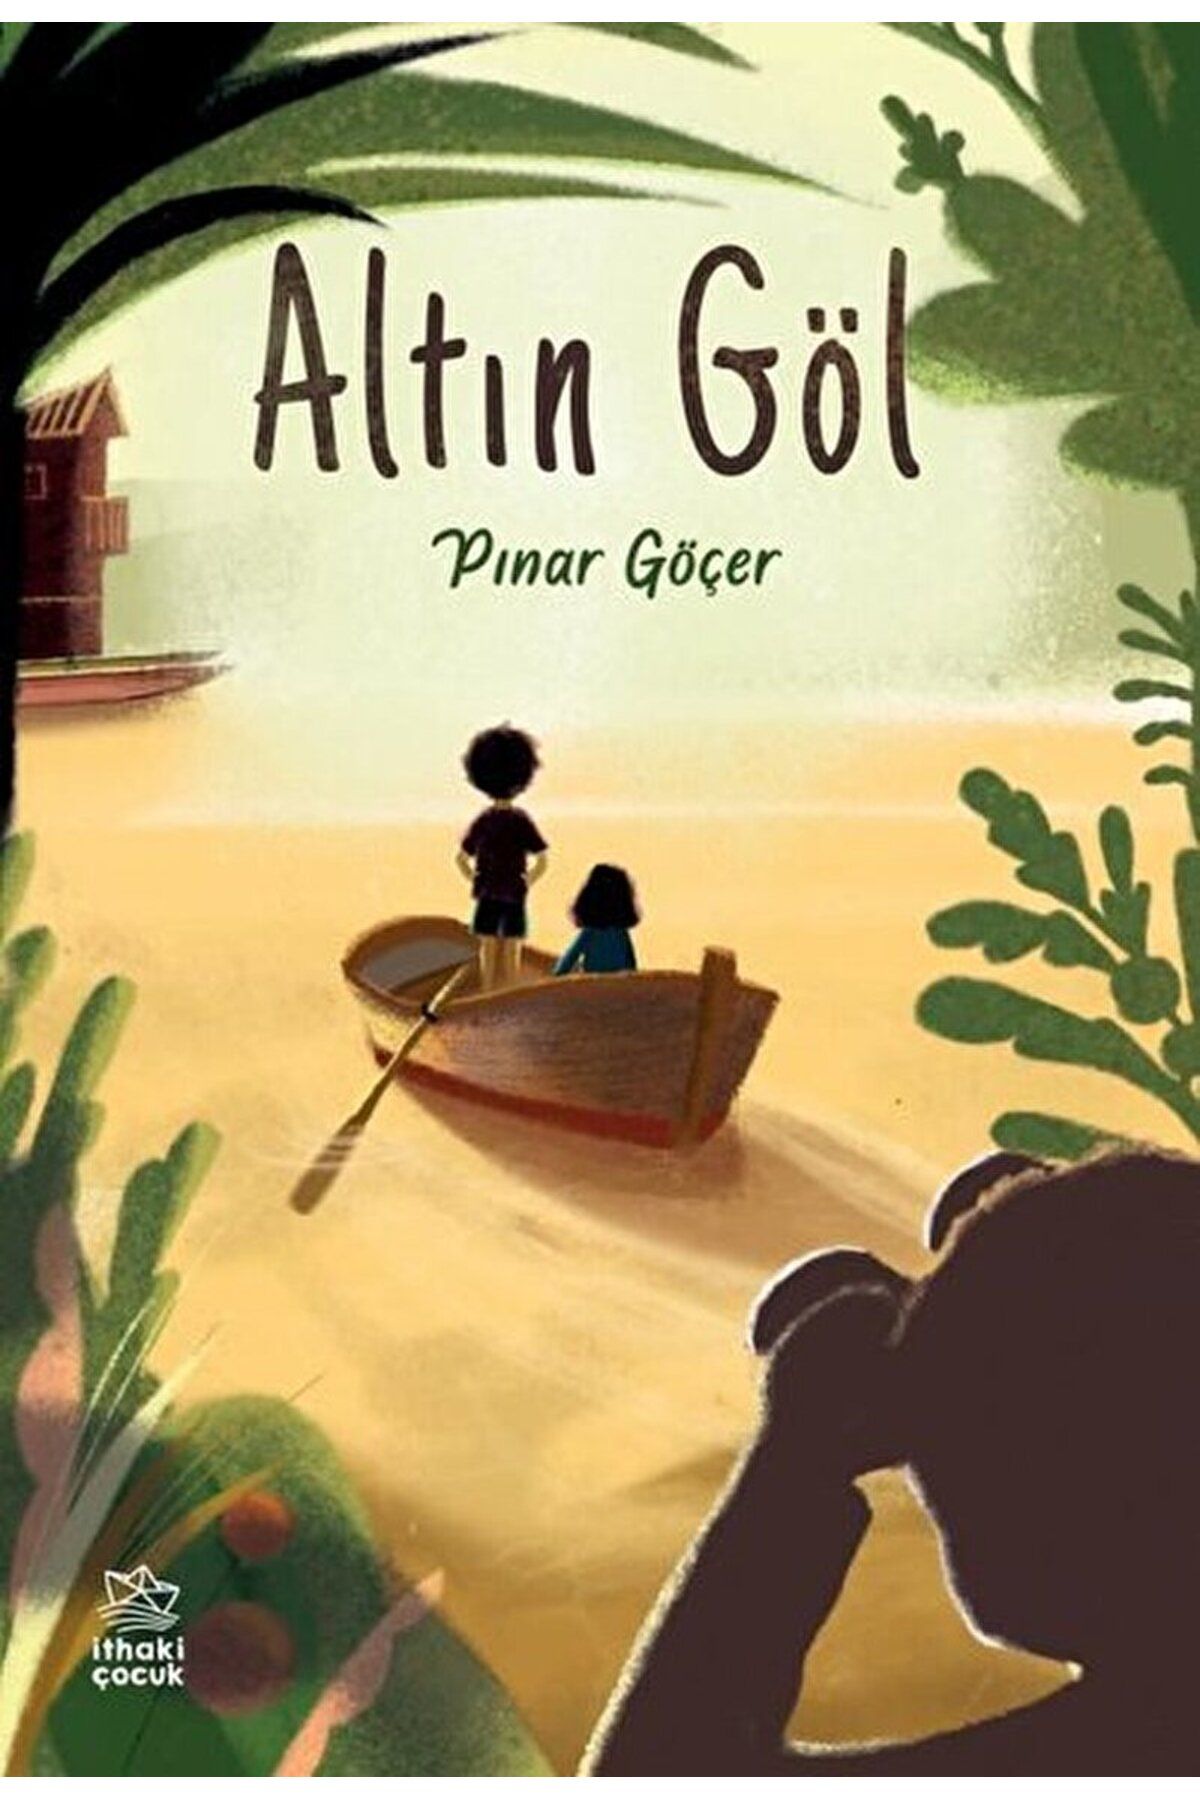 İthaki Yayınları Altın Göl / Pınar Göçer / İthaki Çocuk Yayınları / 9786050643046